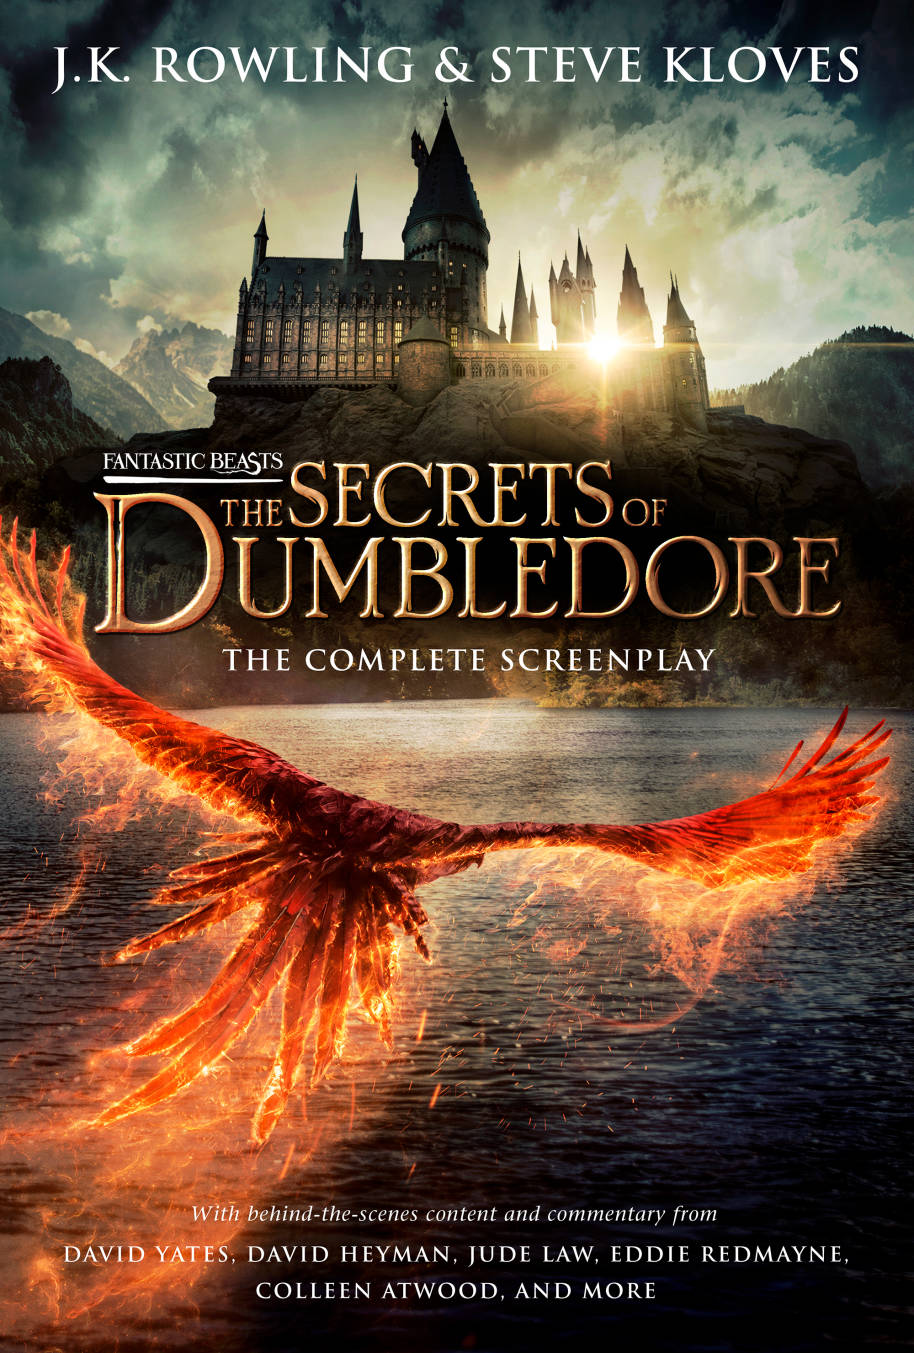 La couverture du scénario de Fantastic Beasts the Secrets of Dumbledore.  L'image montre un phénix survolant le lac en direction de Poudlard.